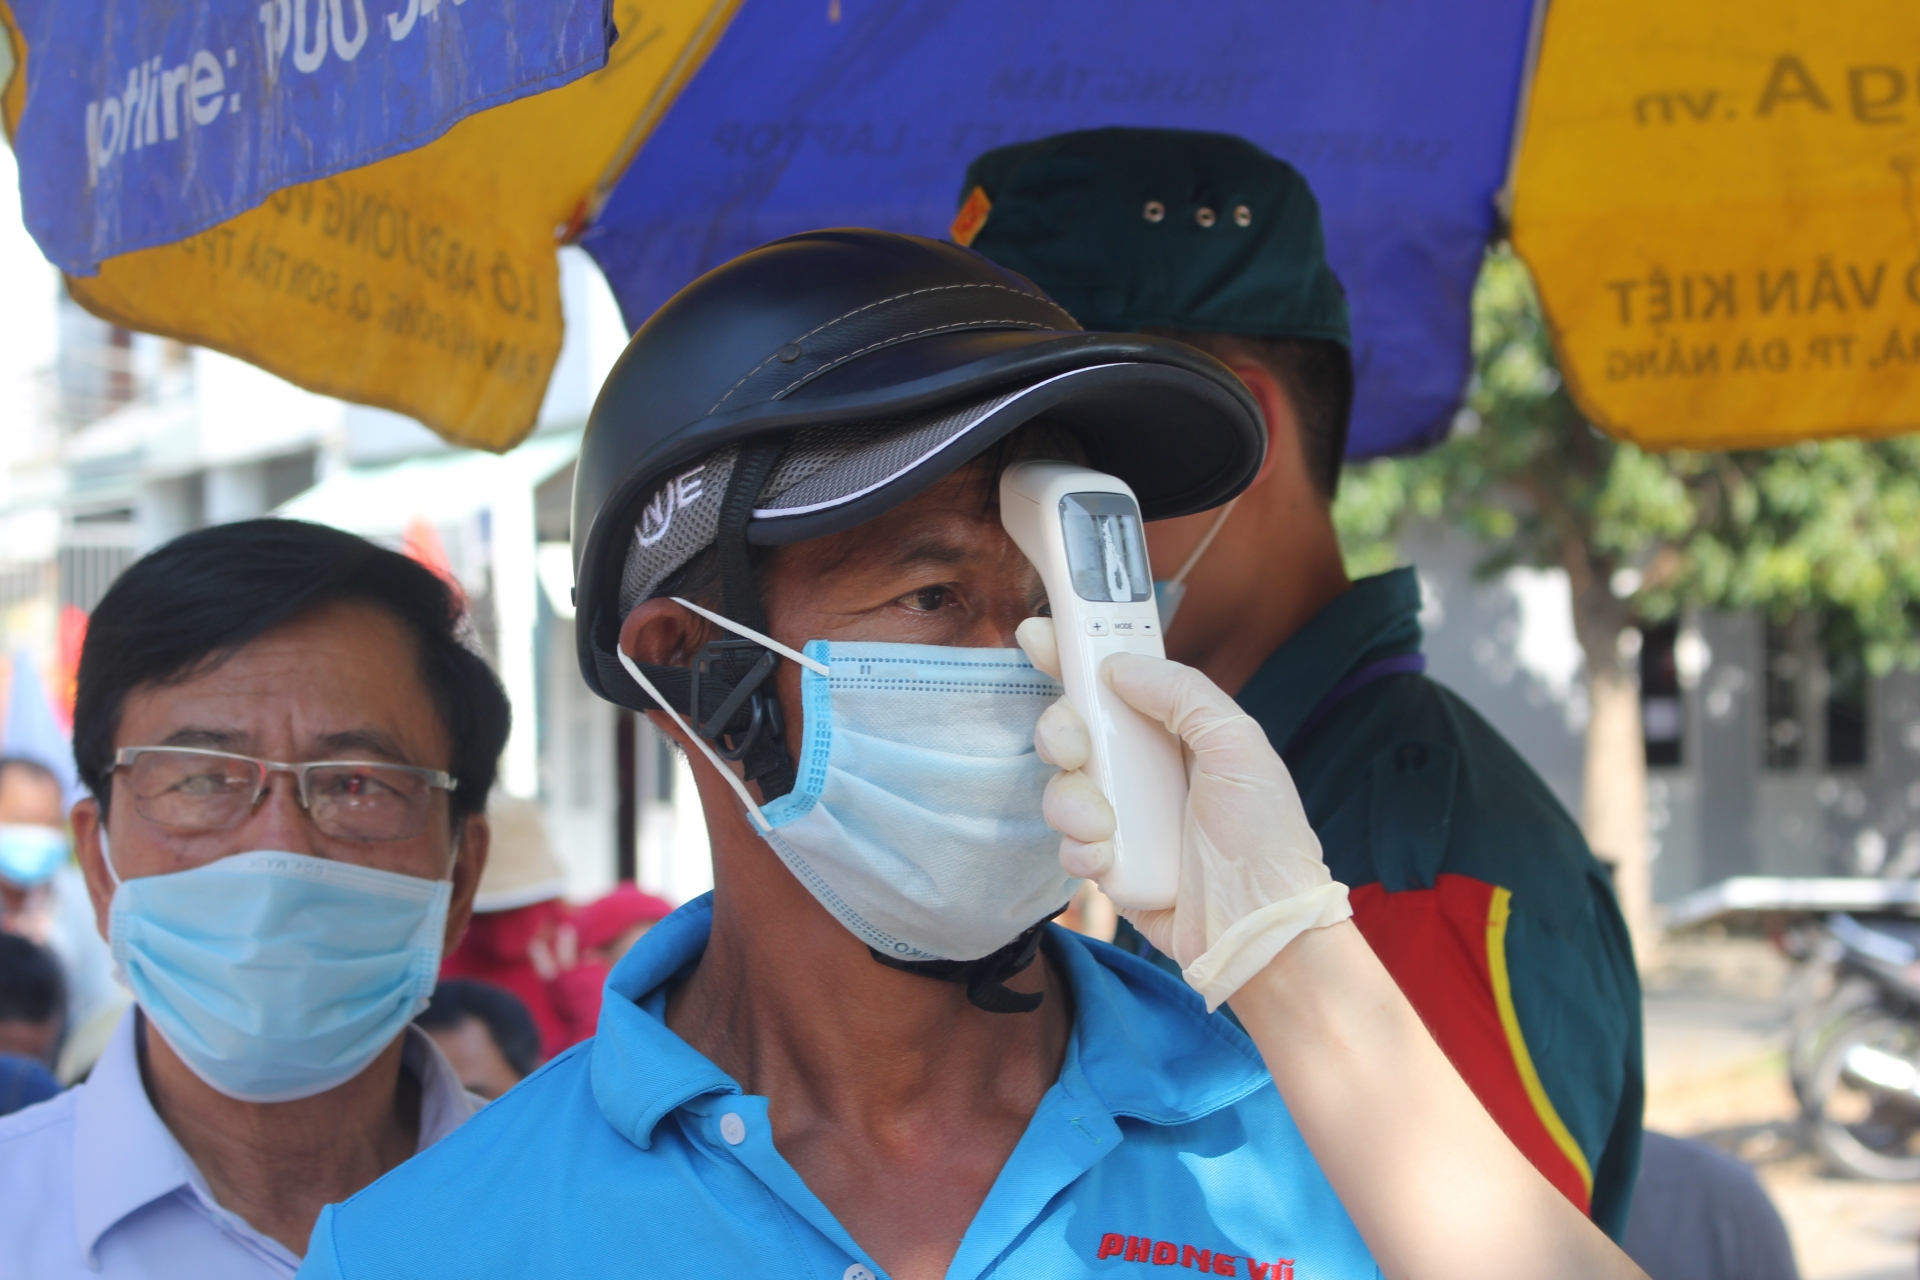 Ngư dân Đà Nẵng gửi gắm niềm tin và hy vọng trong từng lá phiếu